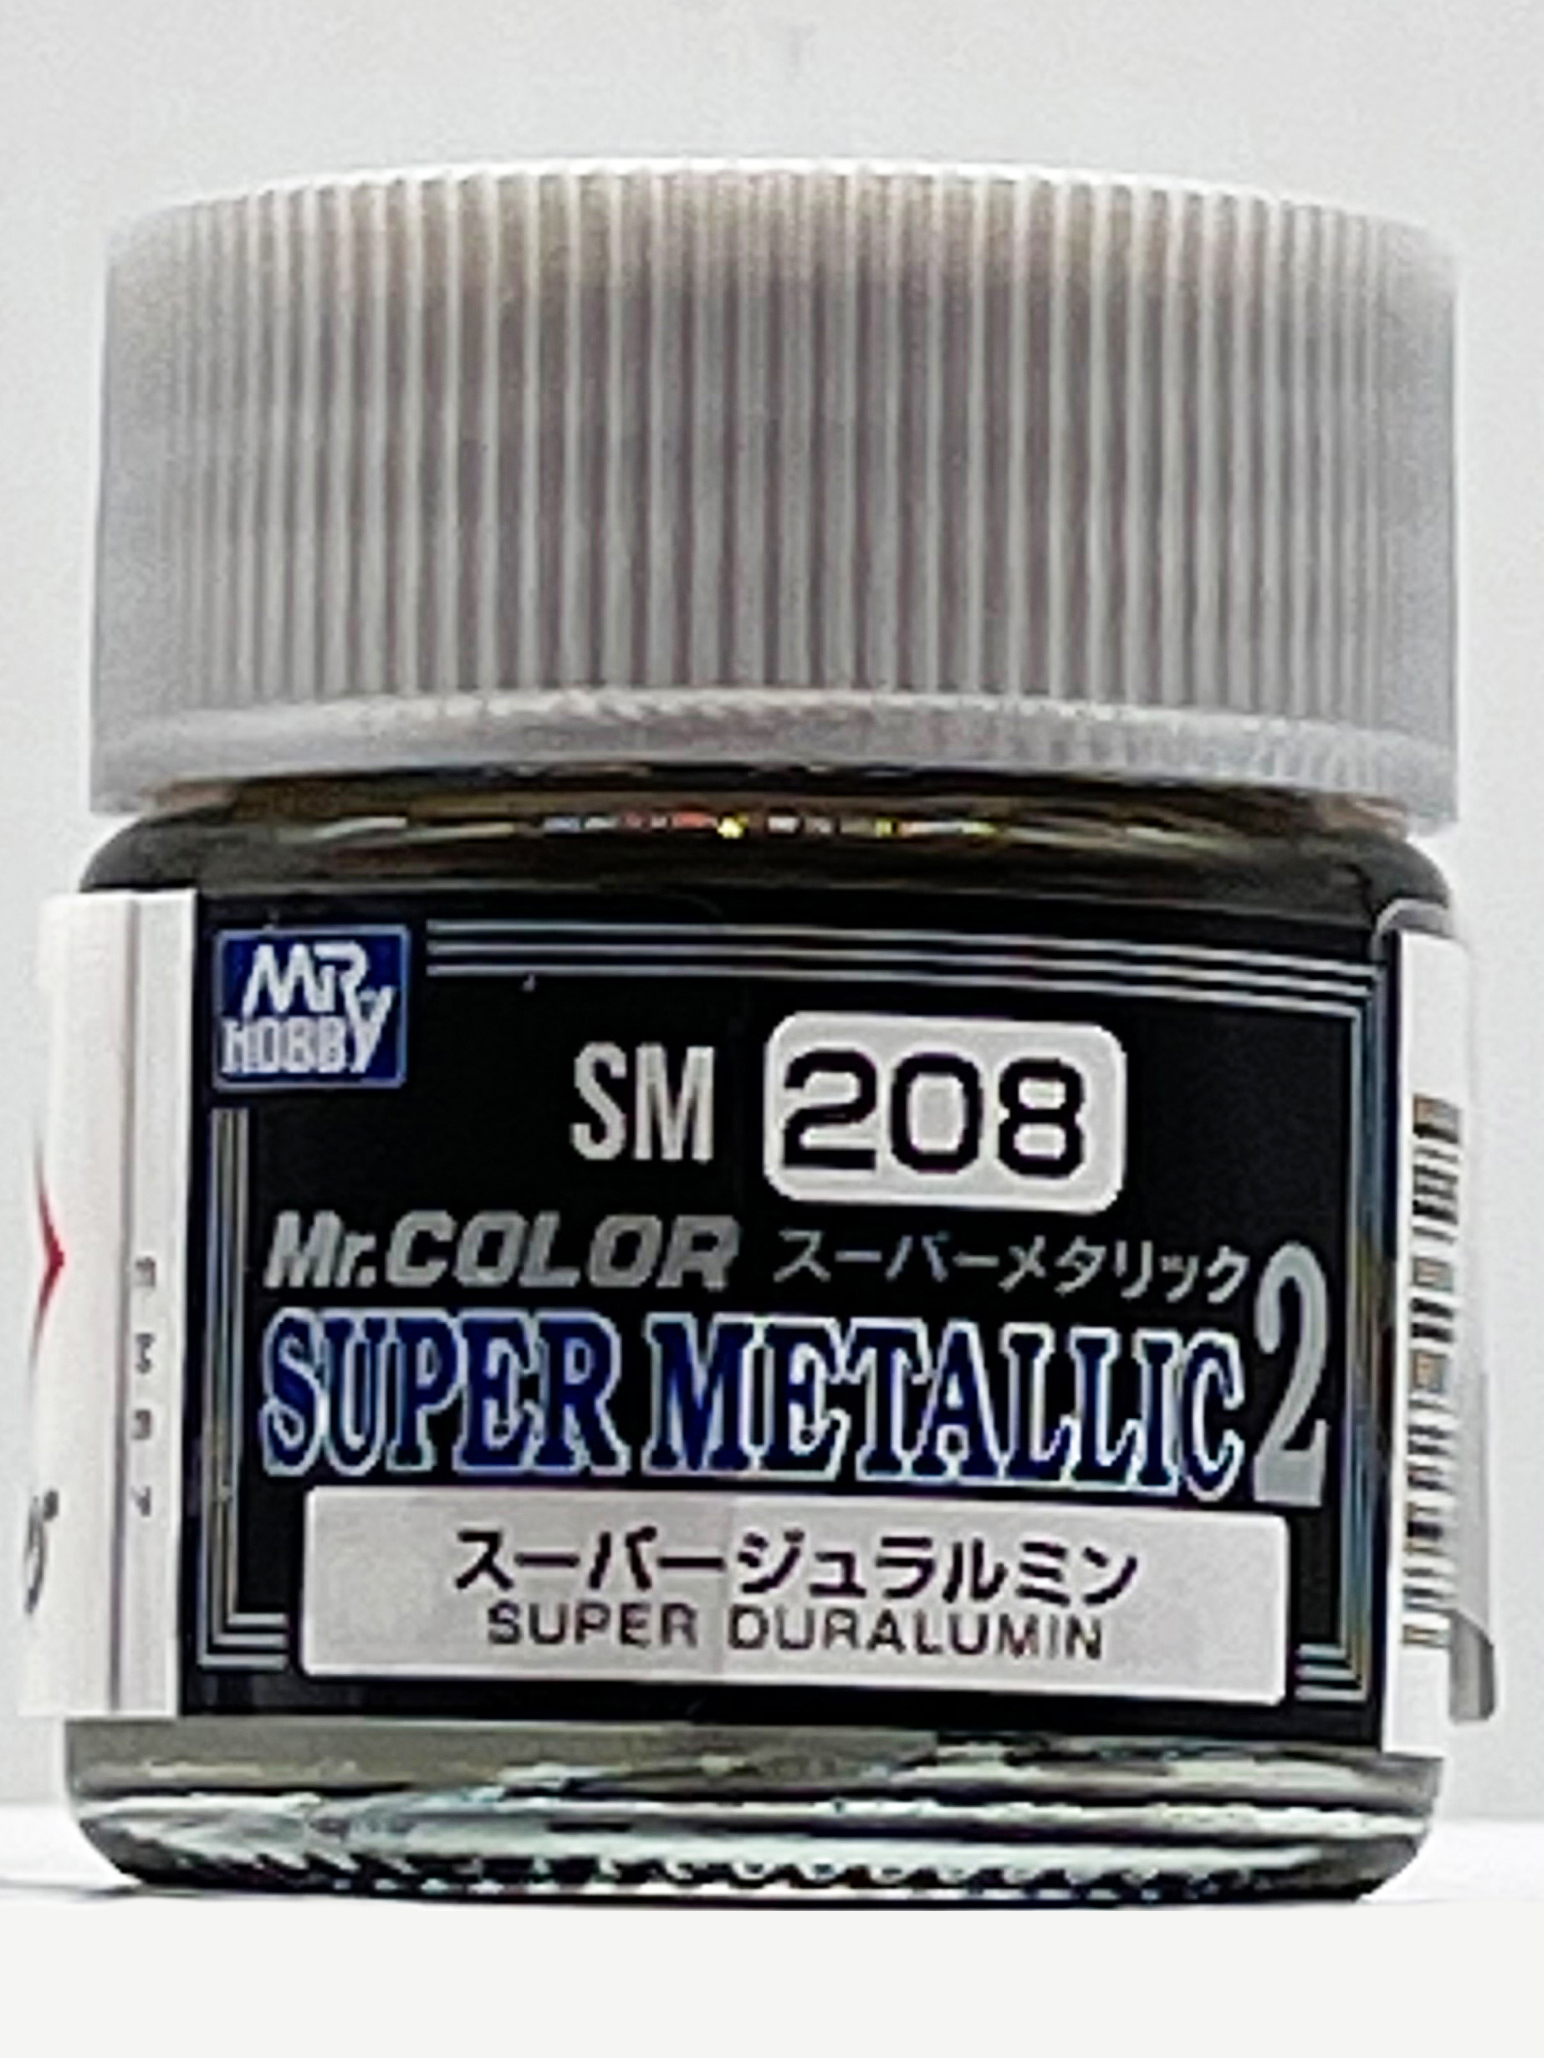 Super Duralumin - SM208 - Duraluminium